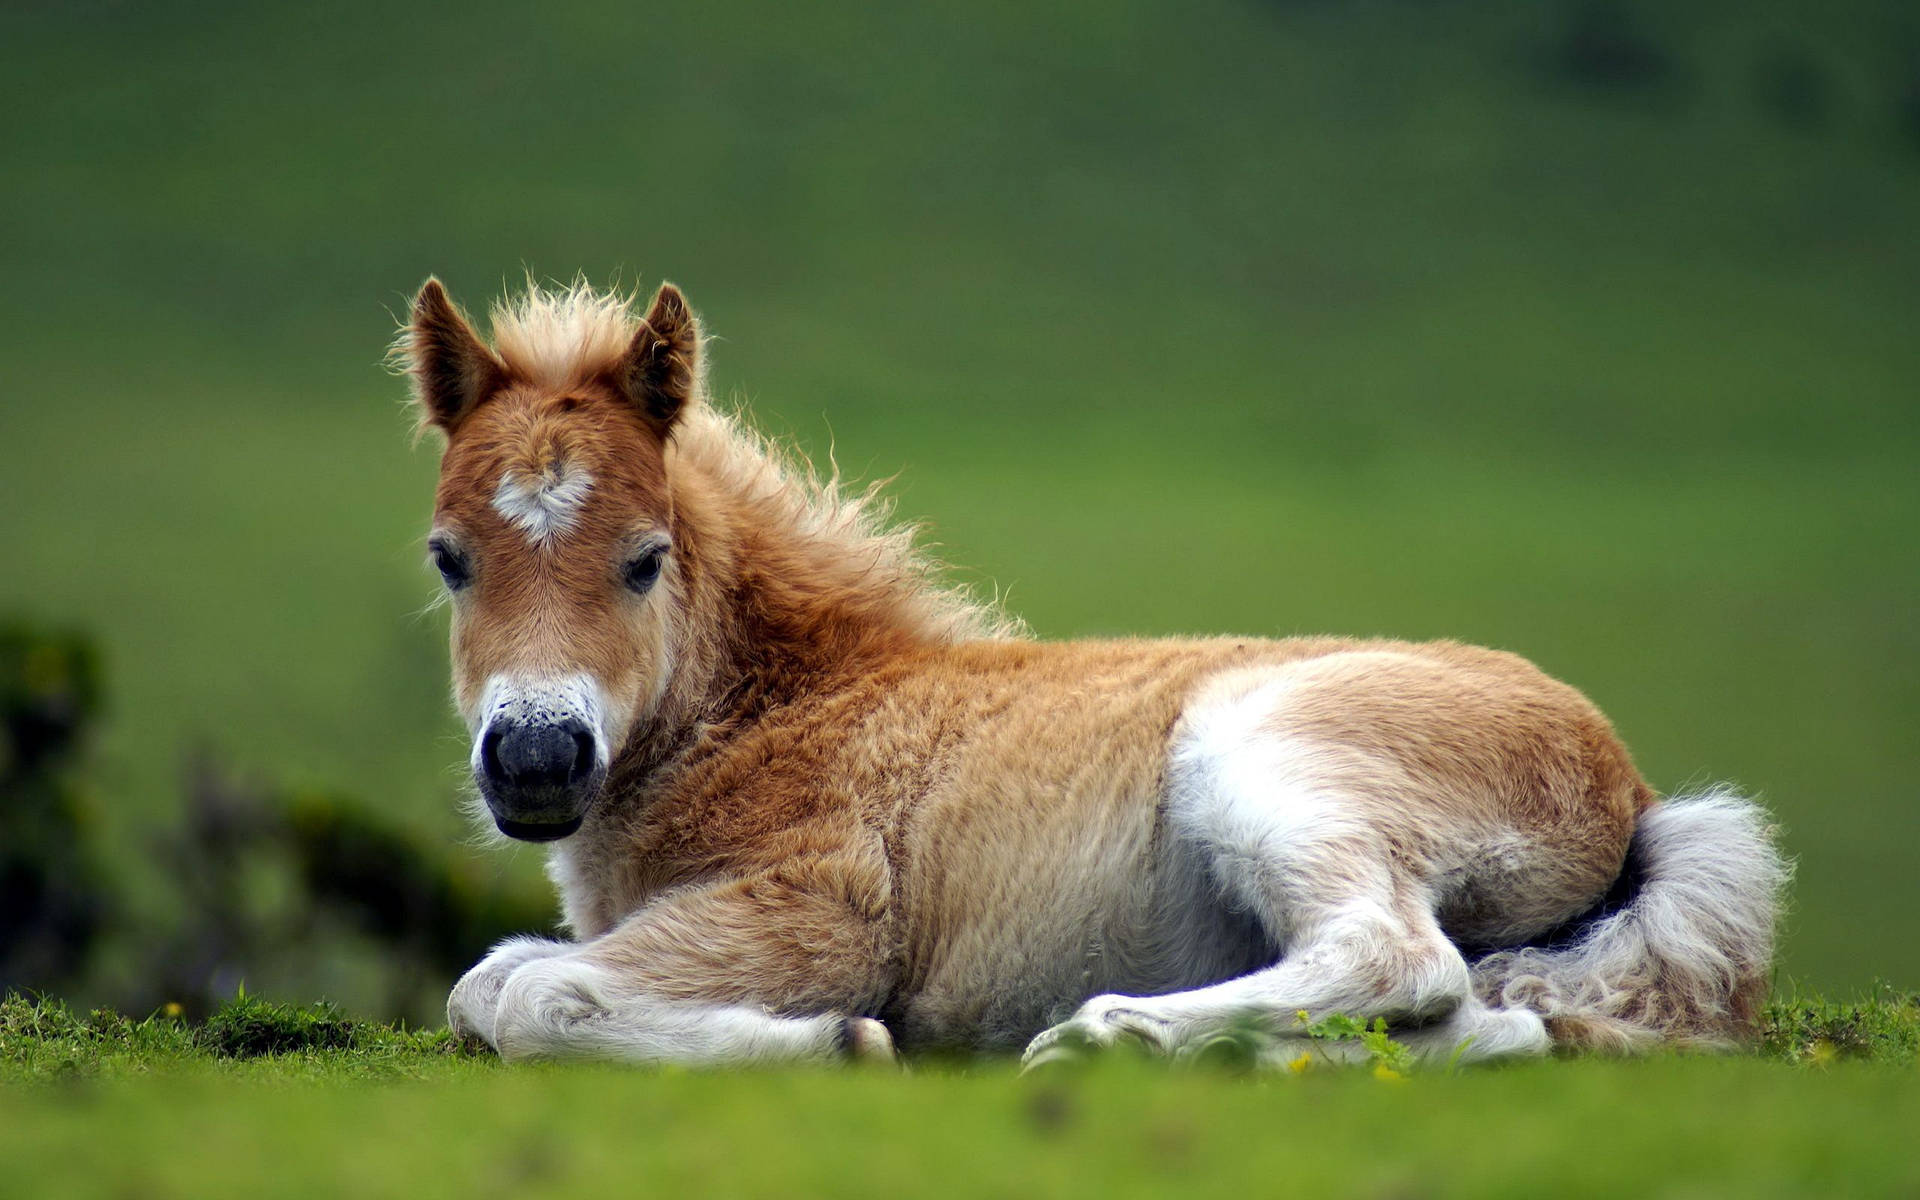 New Born Cute Horse